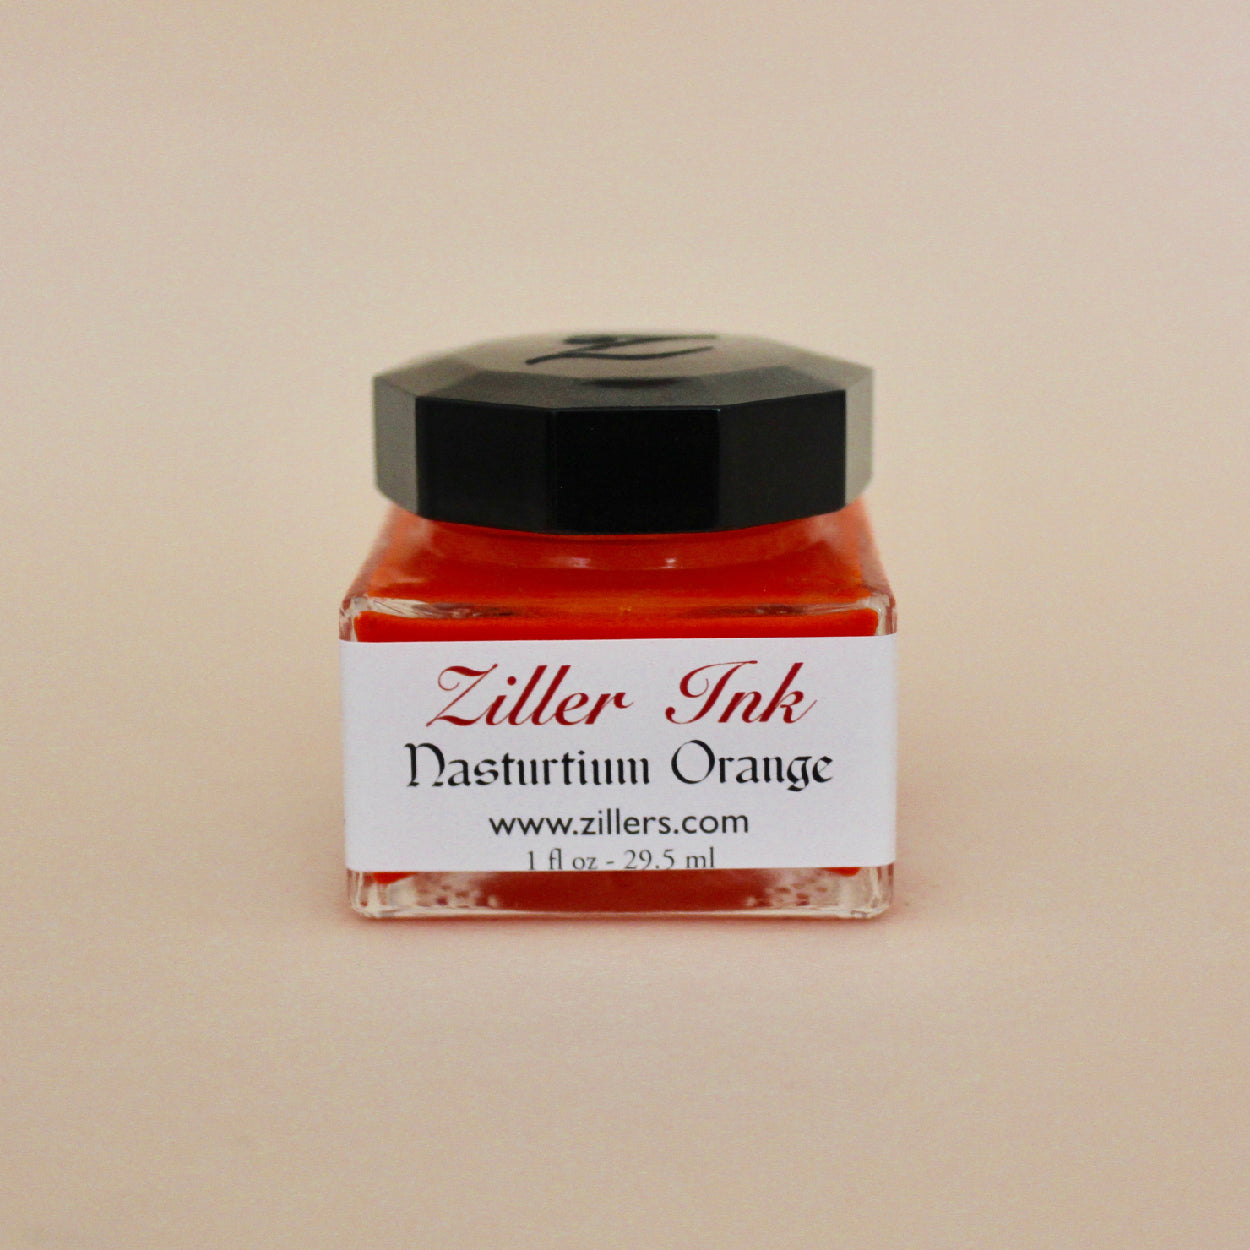 Ziller Ink - Nasturtium Orange